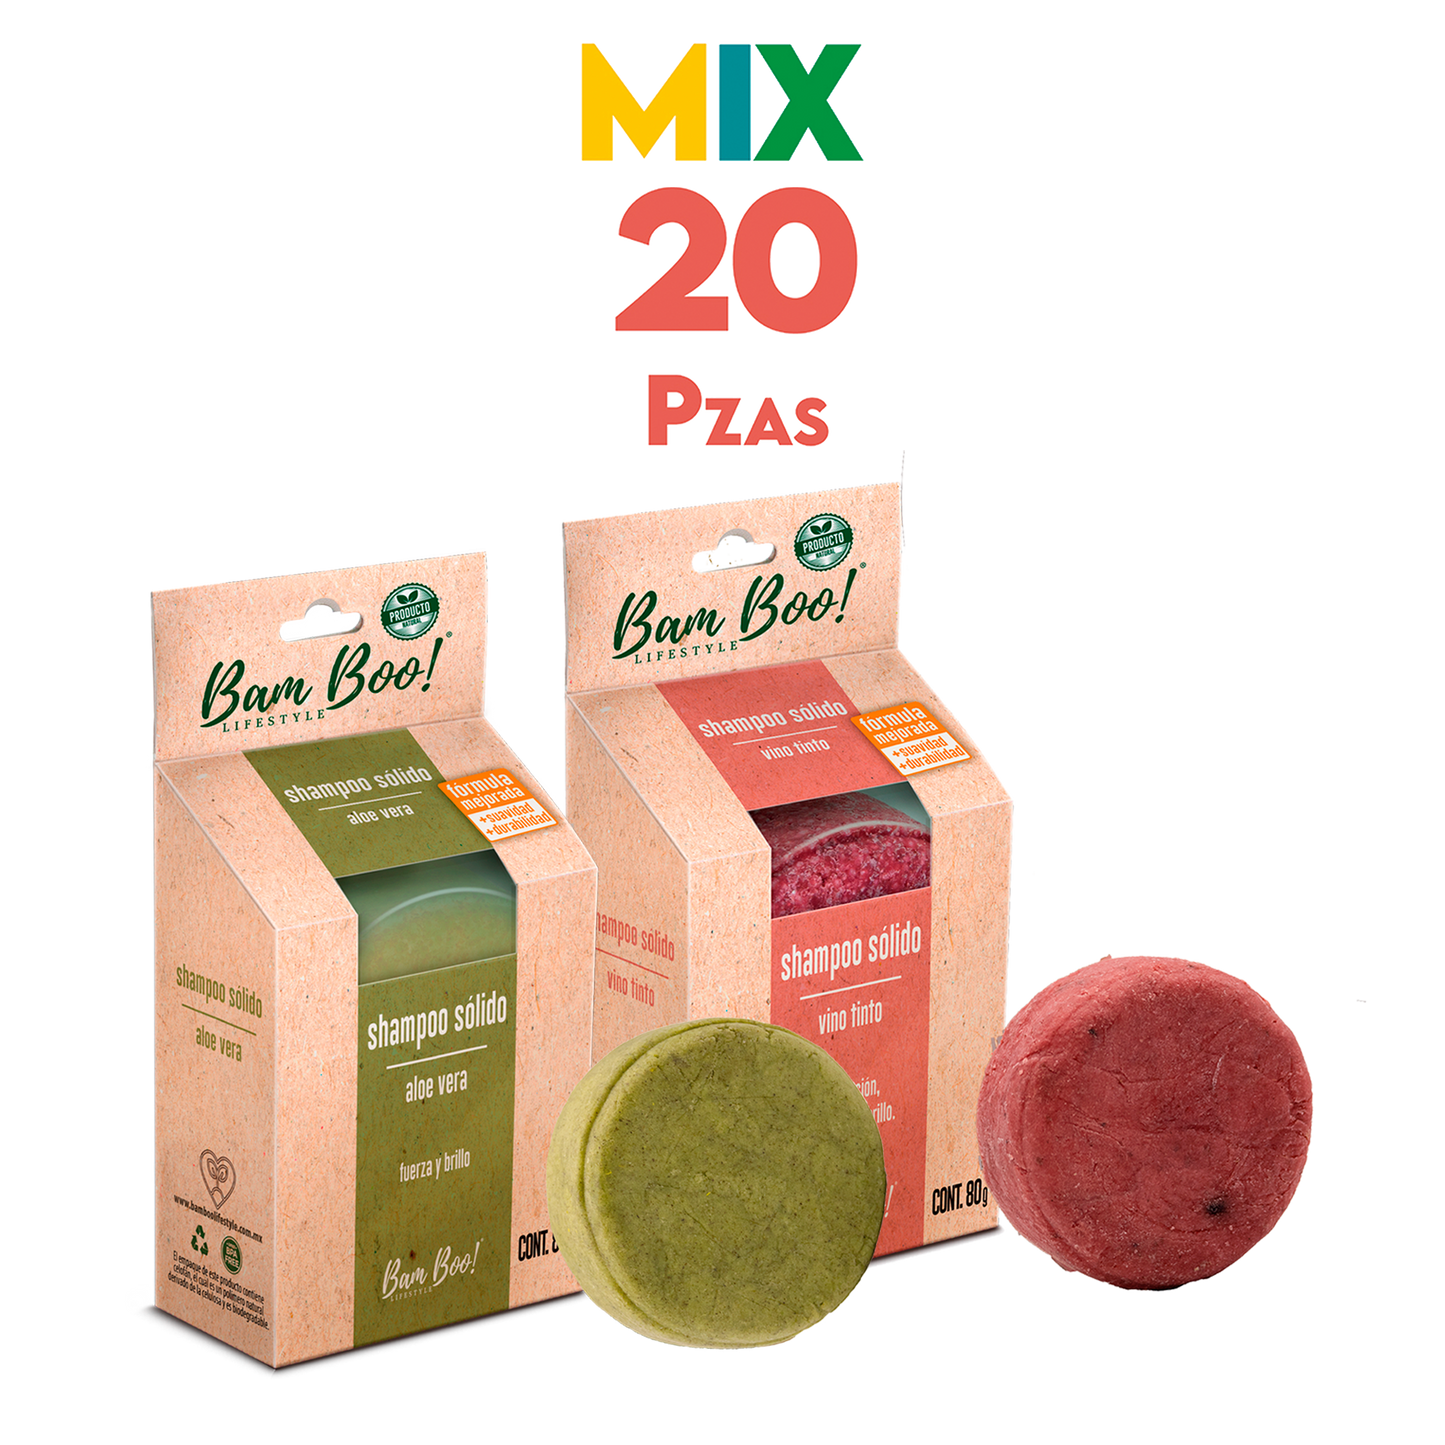 20 Pack Mix Shampoo Sólido Artesanal 80 G Mayoreo Bam Boo! Lifestyle